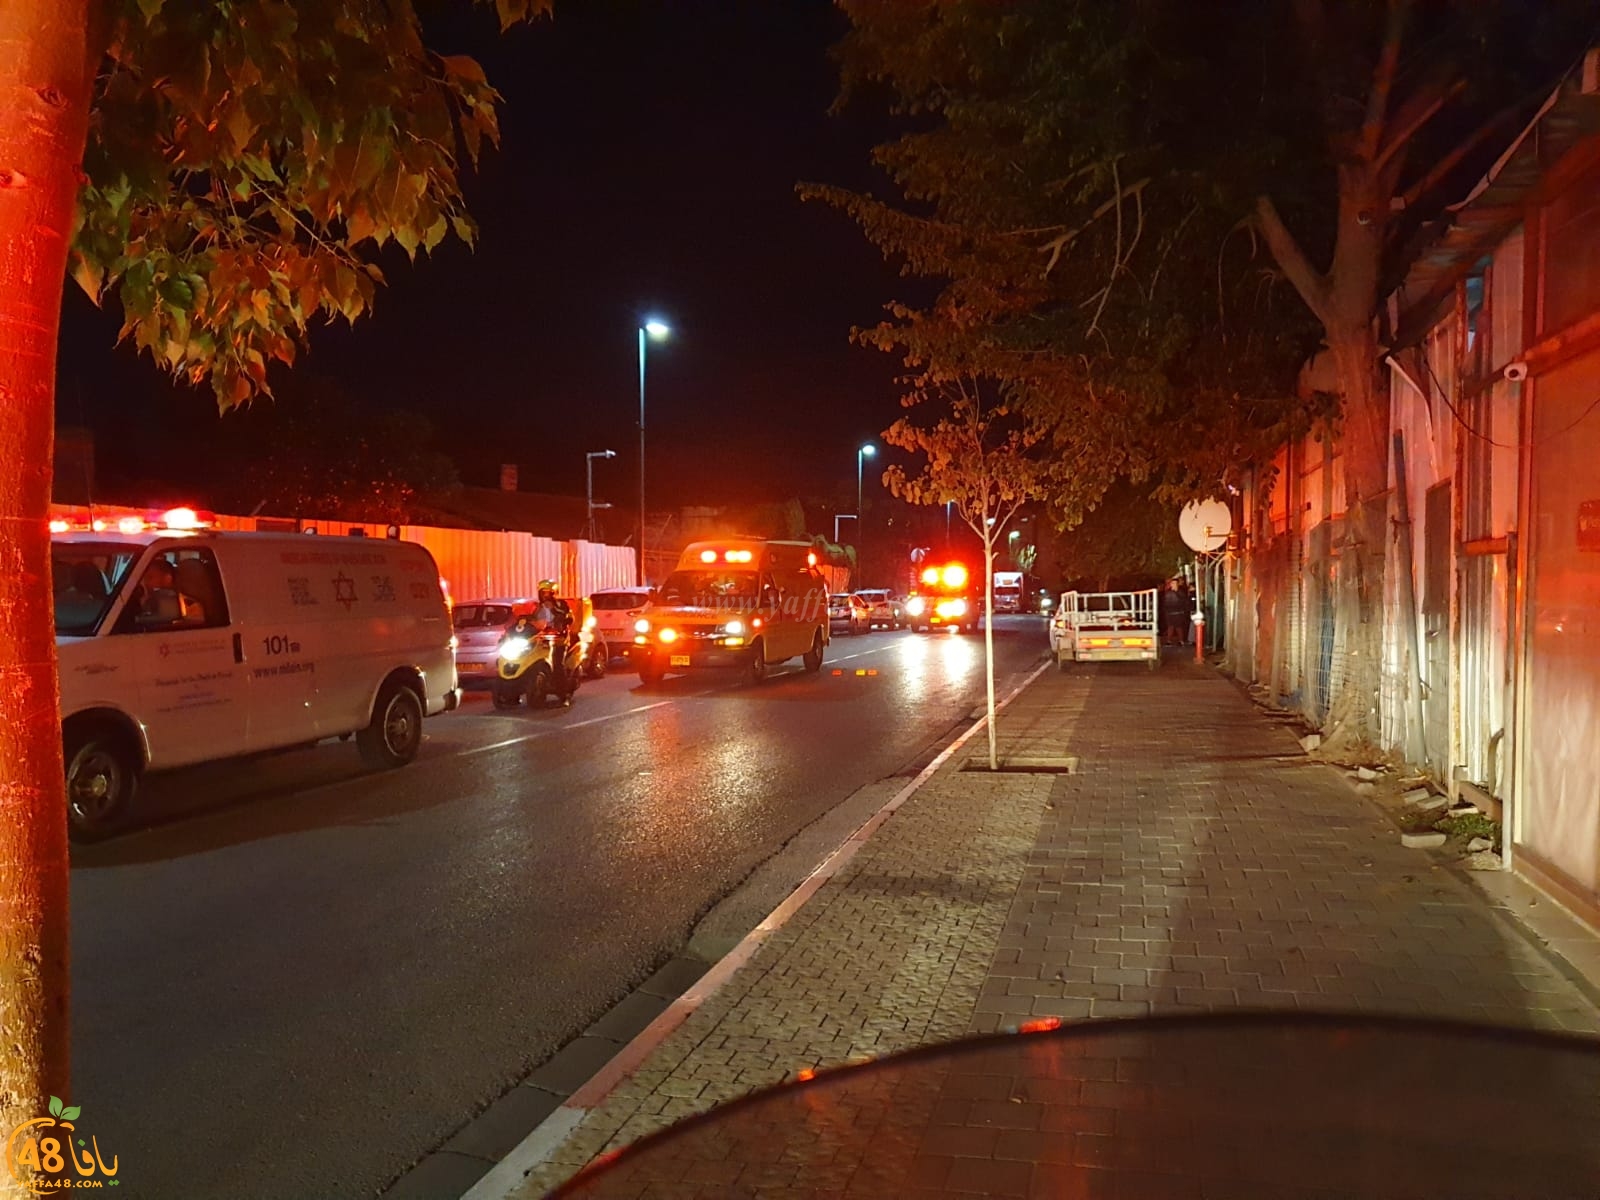   يافا: بعد اطلاق النار - الشرطة تُباشر بمطاردة مطلقي النار 